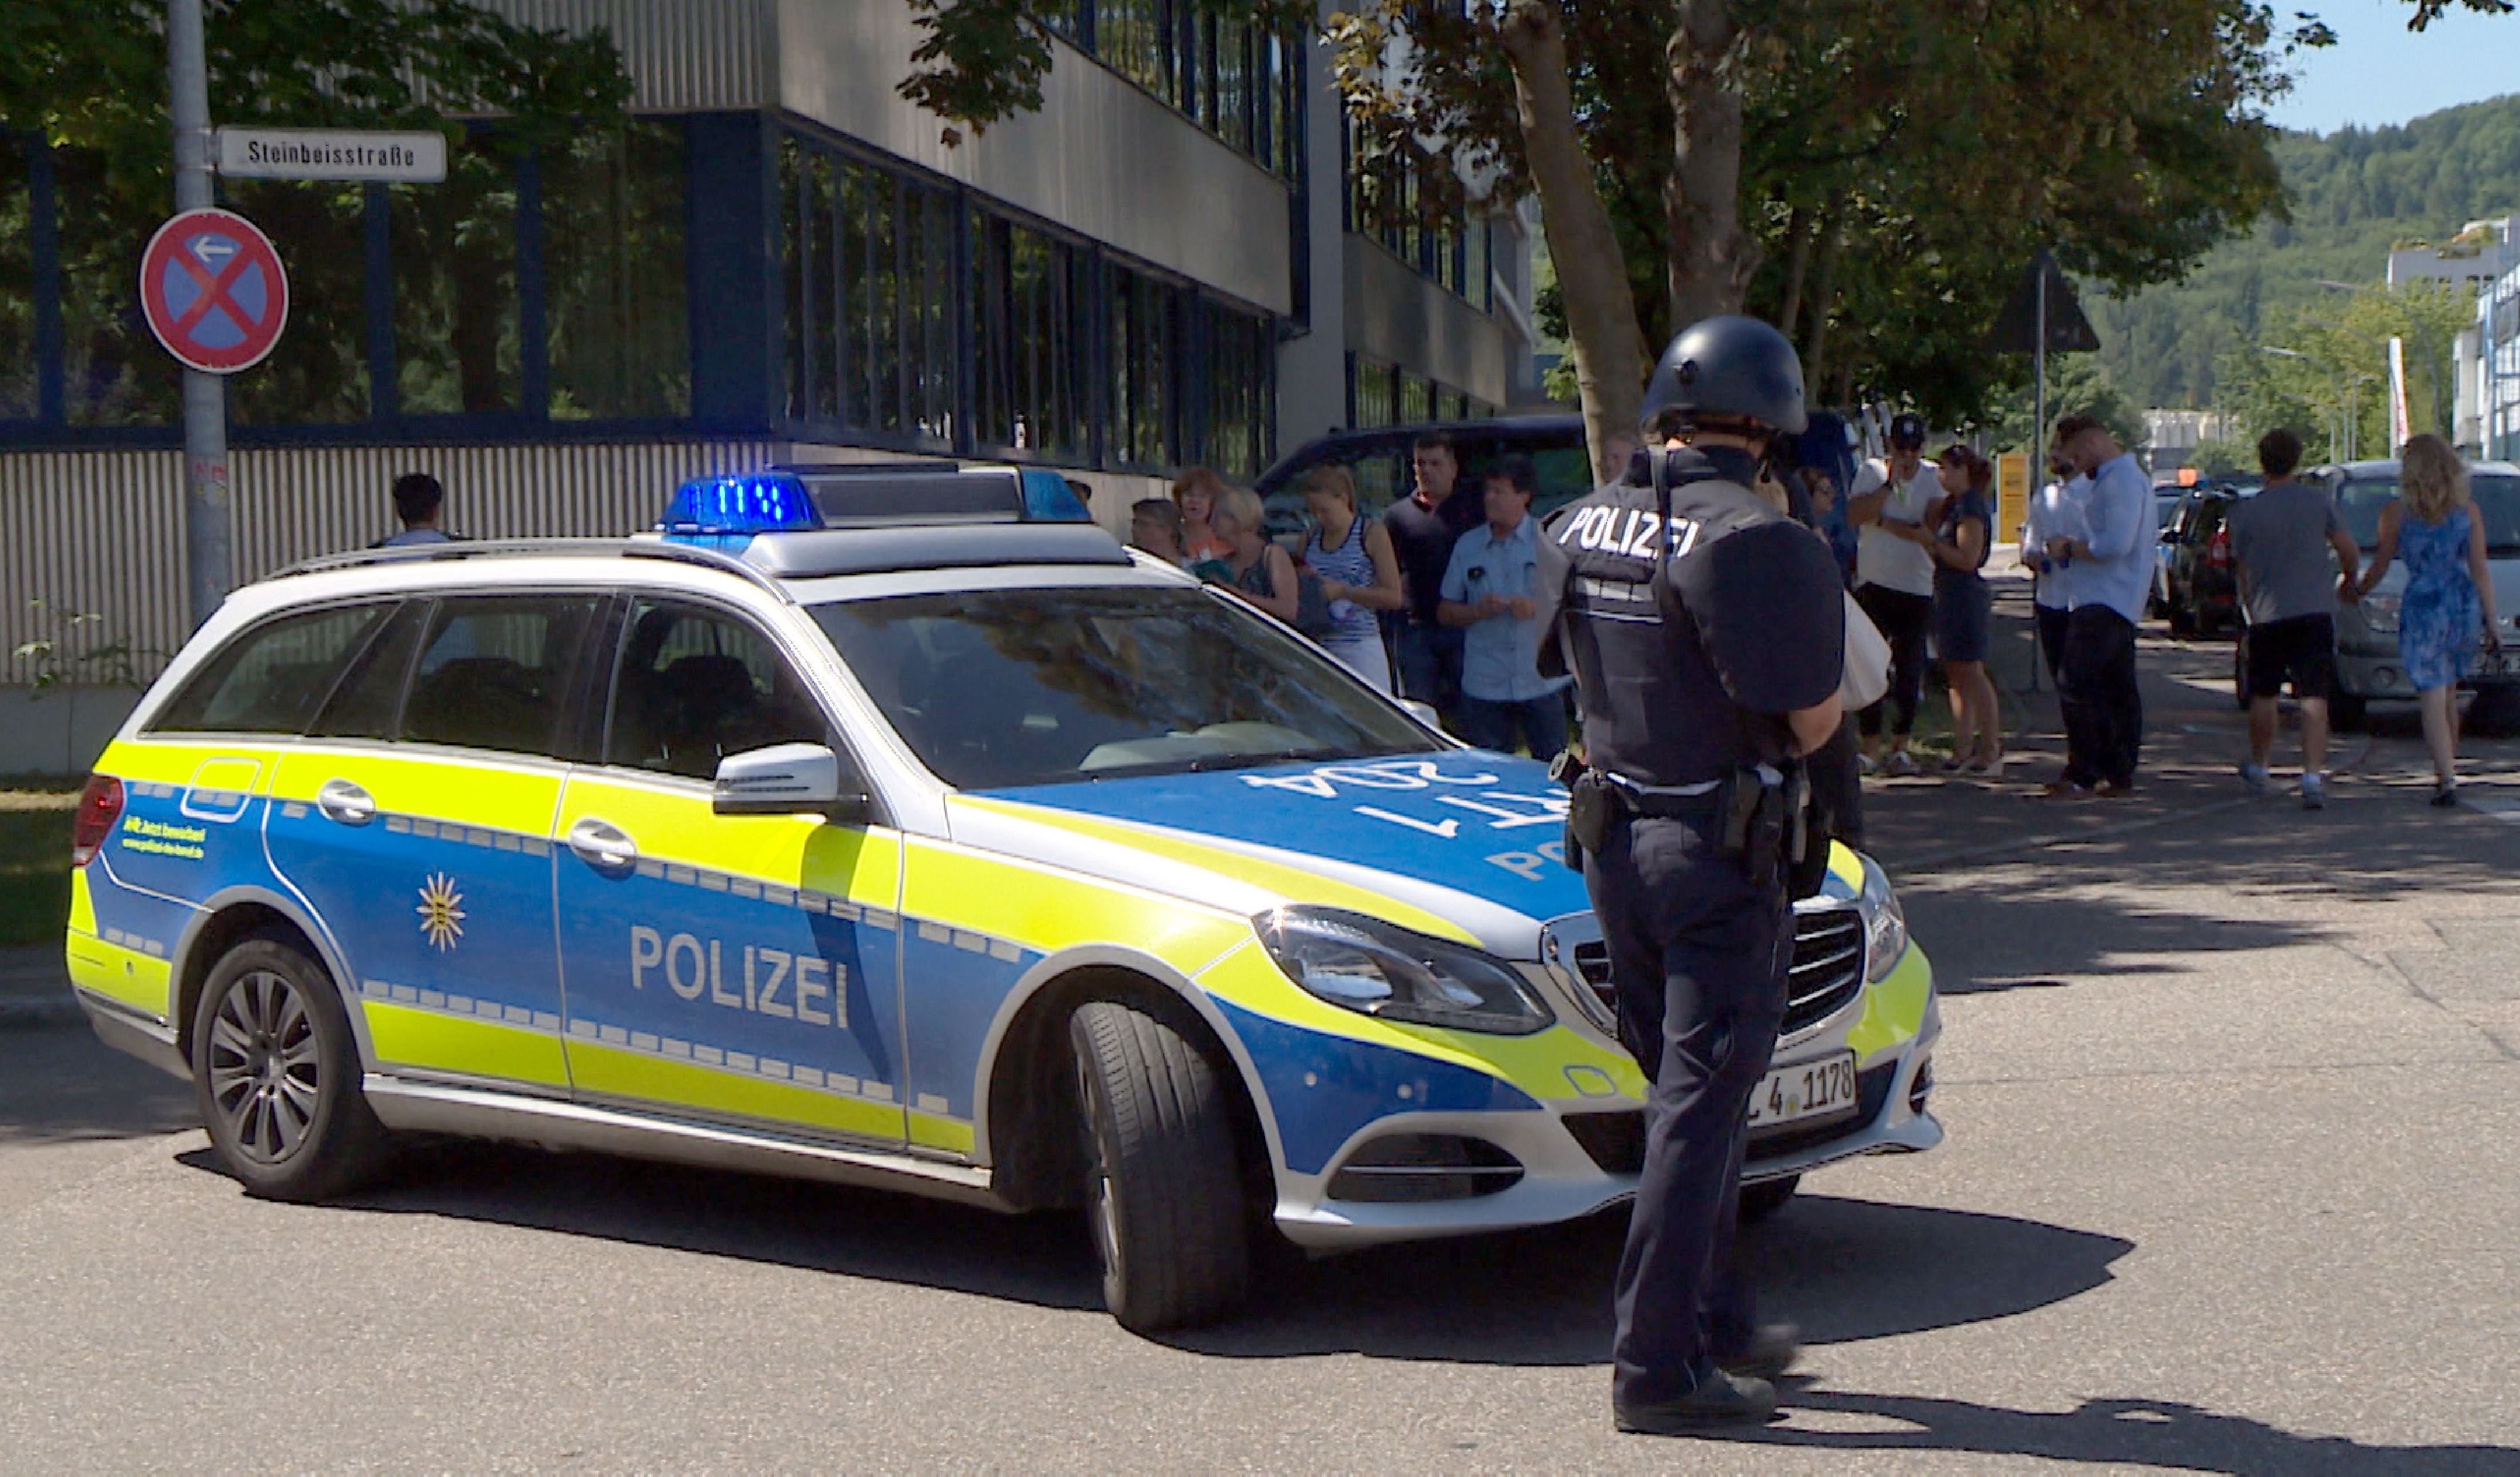 إخلاء قسم شرطة بألمانيا بسبب كيس من الرمال الناعمة